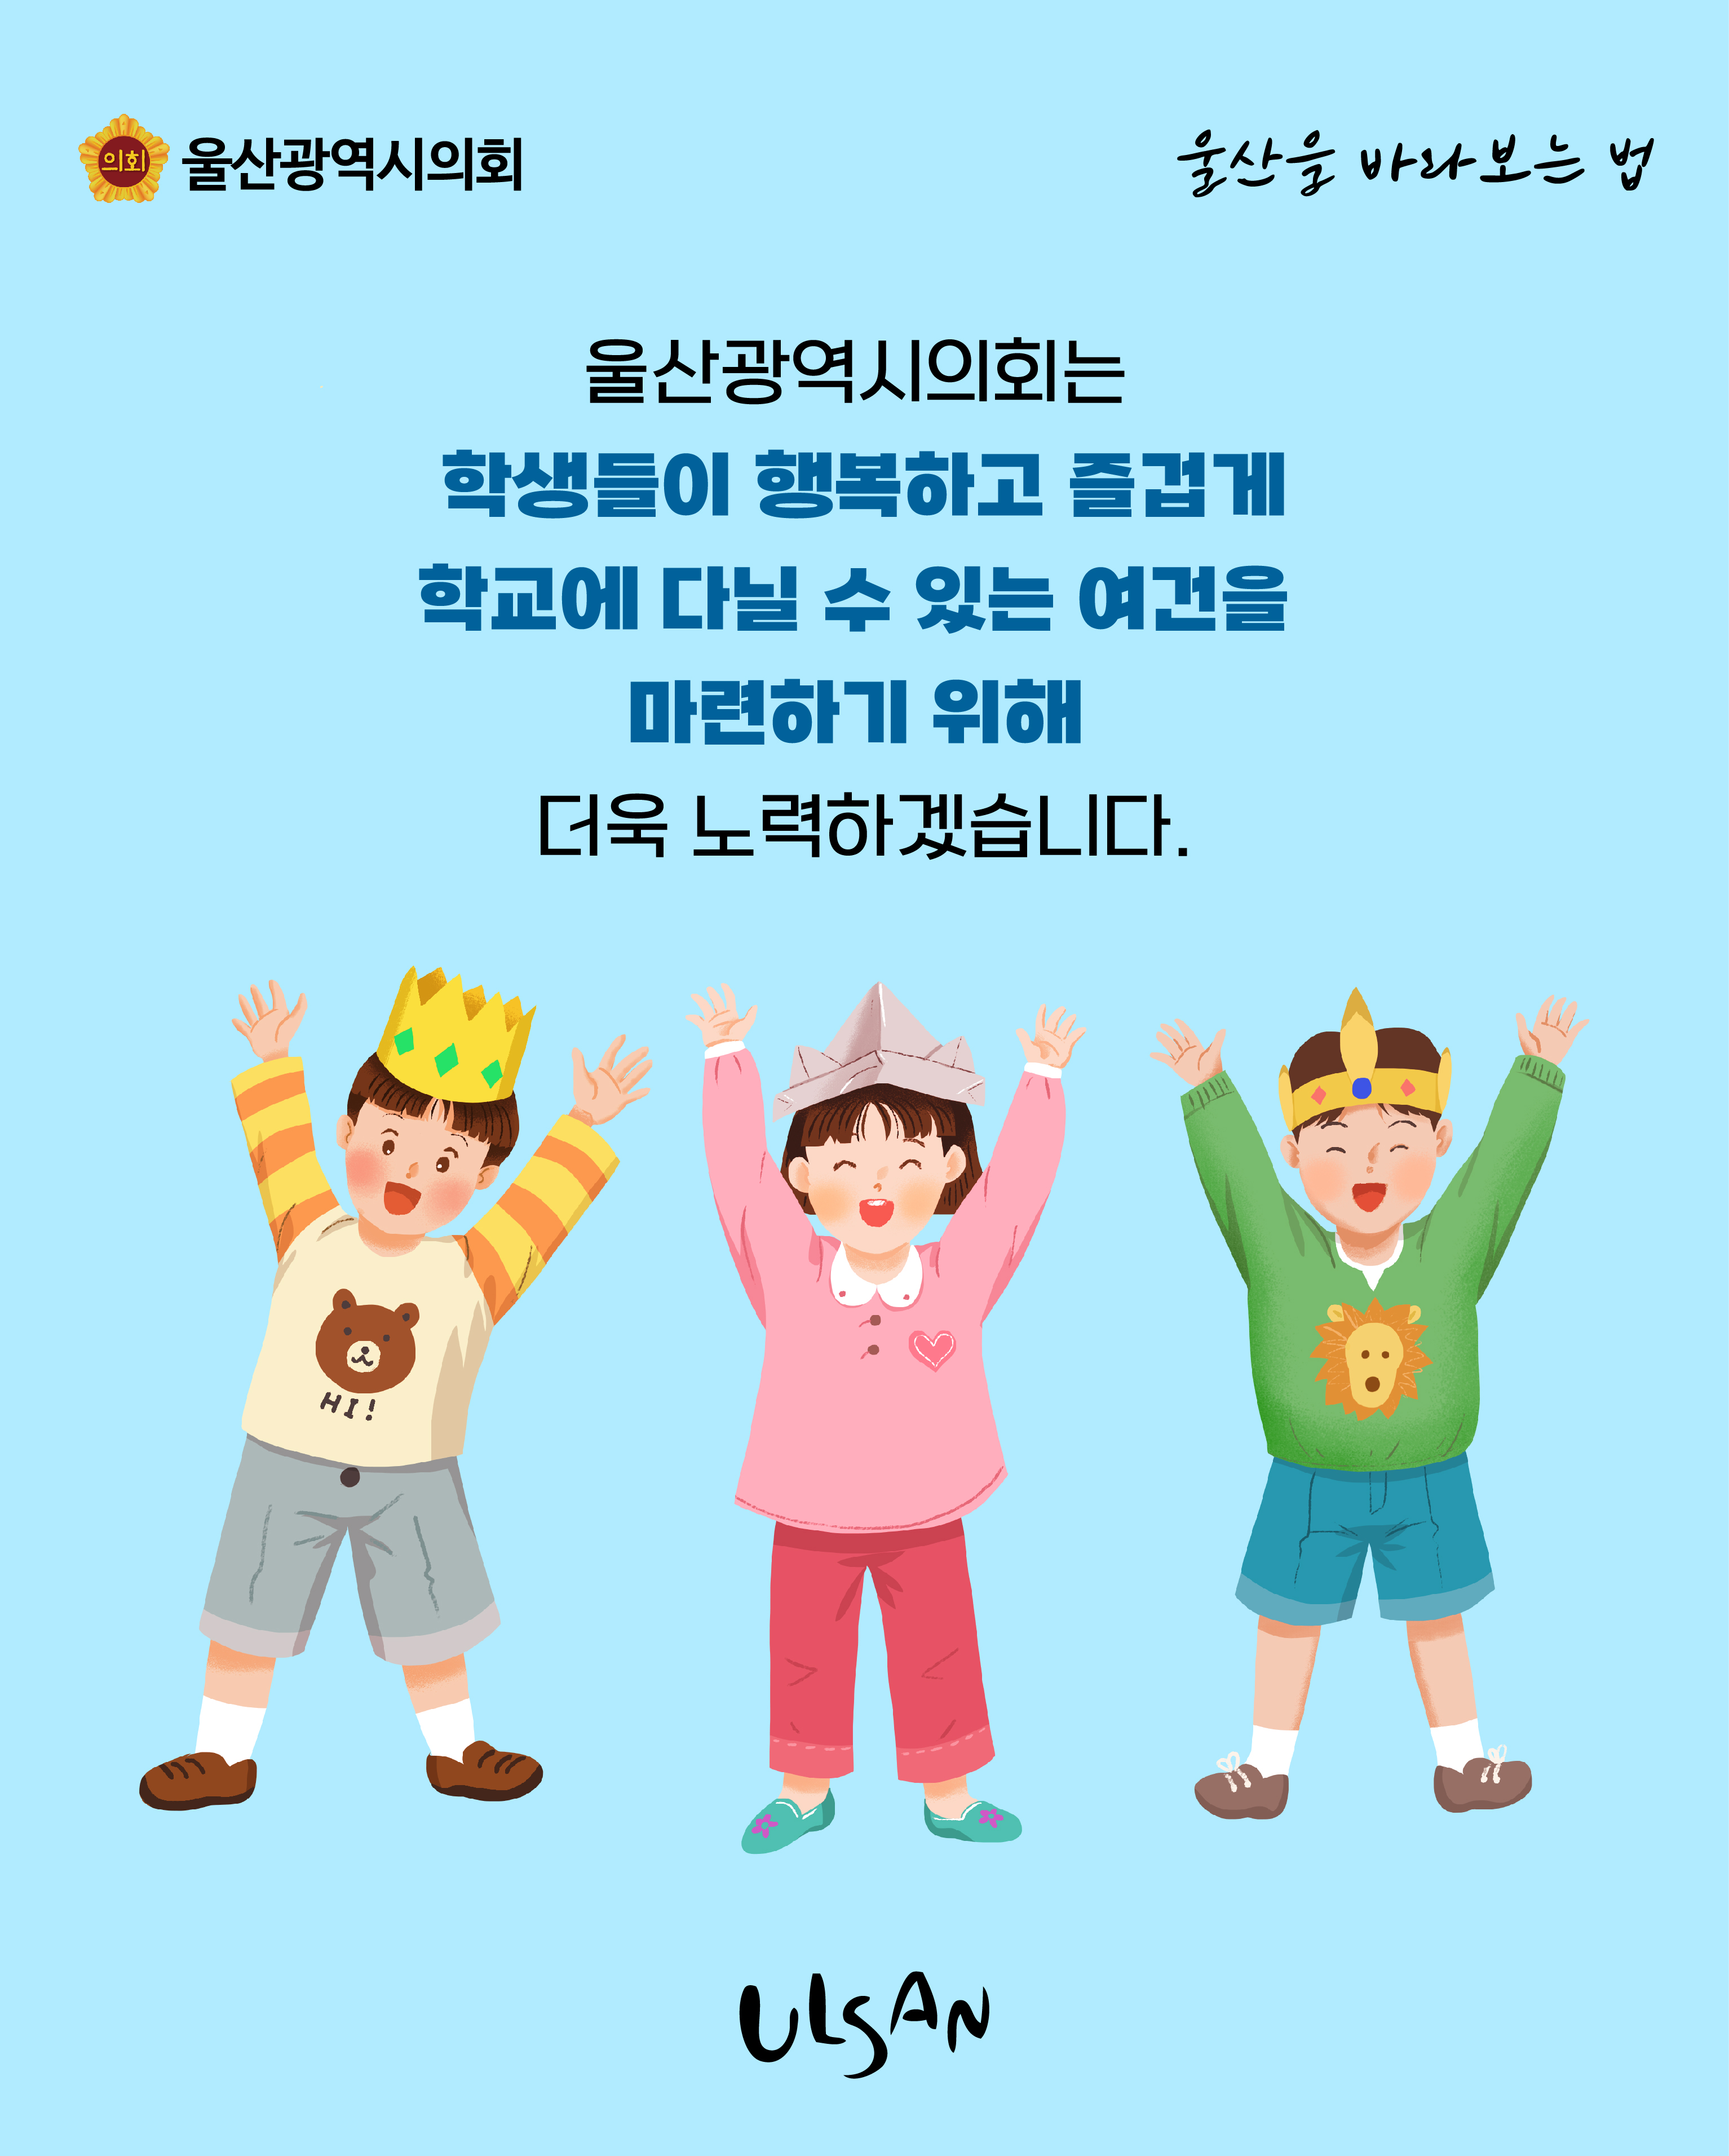 울산광역시의회는 학생들이 행복하고 즐겁게 학교에 다닐 수 있는 여건을 마련하기 위해 더욱 노력하겠습니다.